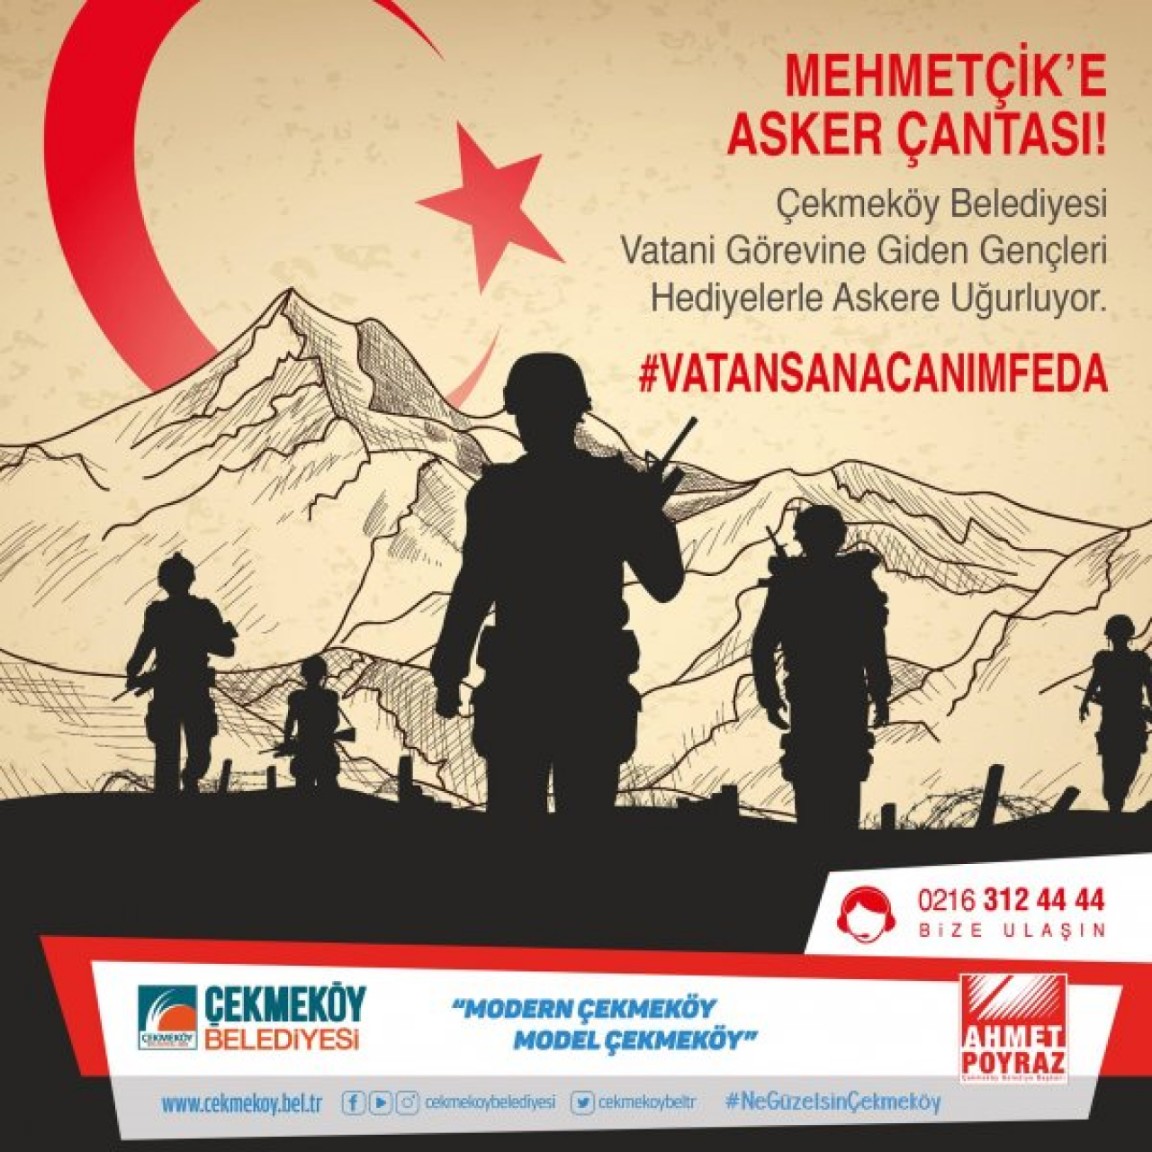 Mehmetçike Asker Çantası Projesi